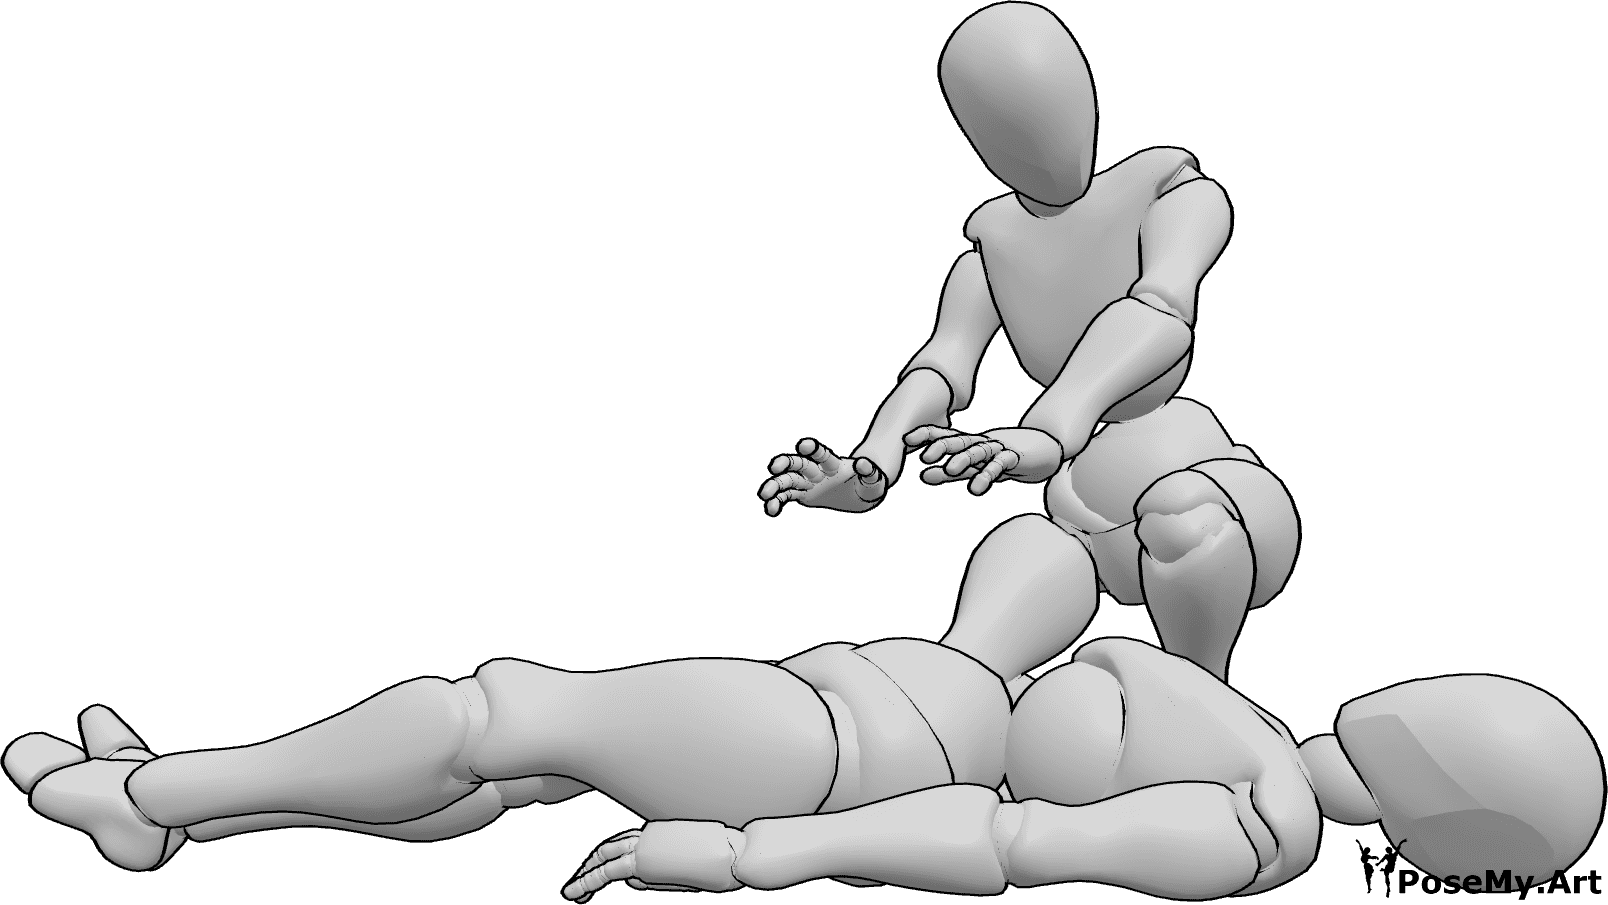 Posen-Referenz- Weibliche Heilungspose - Eine Heilerin hockt sich hin und heilt die verletzte Frau, die am Boden liegt.